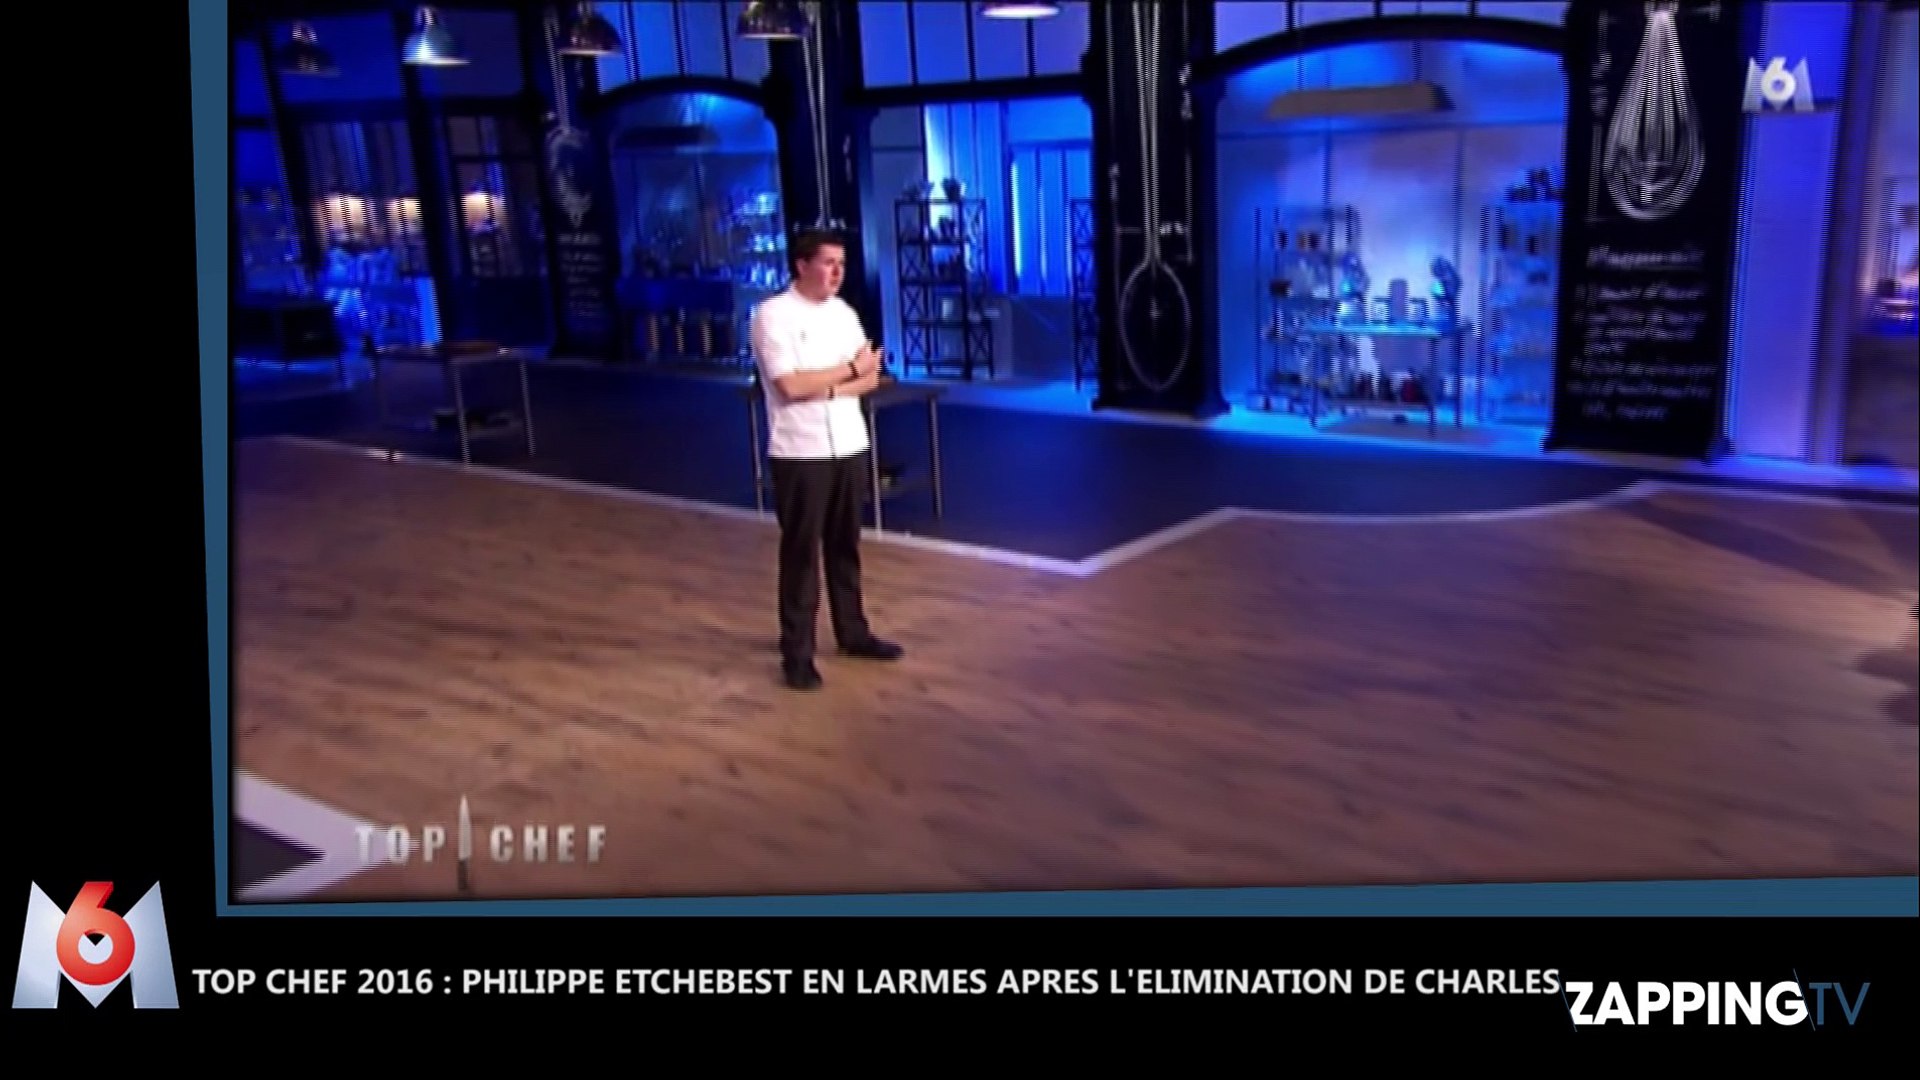 Top Chef 2016 : Charles éliminé, Philippe Etchebest craque et termine en  larmes (Vidéo) - Vidéo Dailymotion